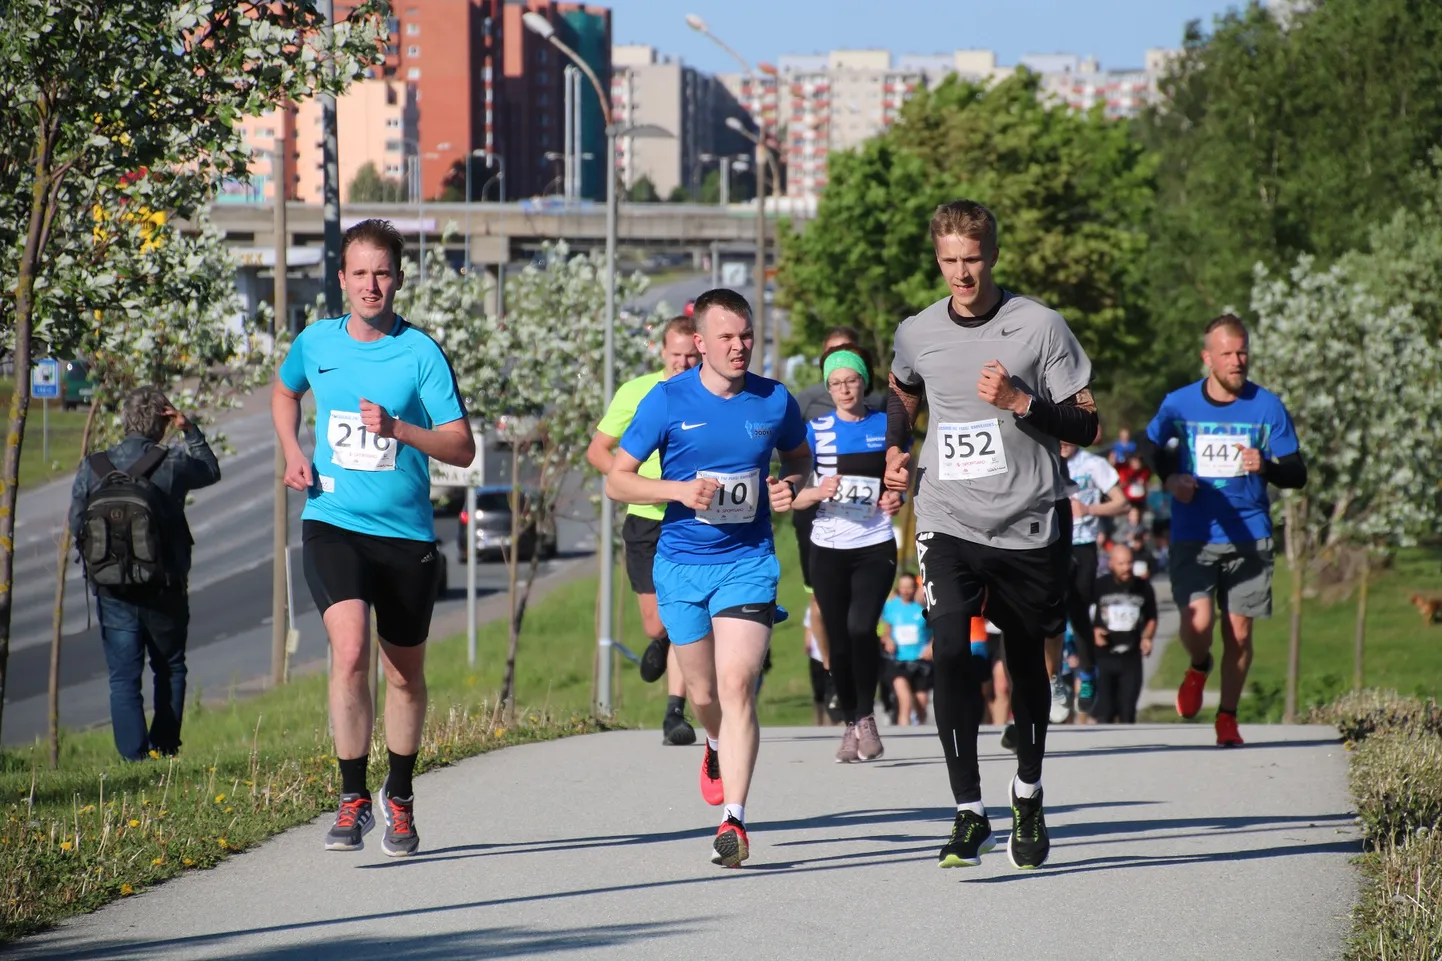 Забеги в Таллинне набирают популярность. На фото - участники забега в парке паэ (Ласнамяэ), а на следующих выходных стартует забег в Пыхья-Таллинне.